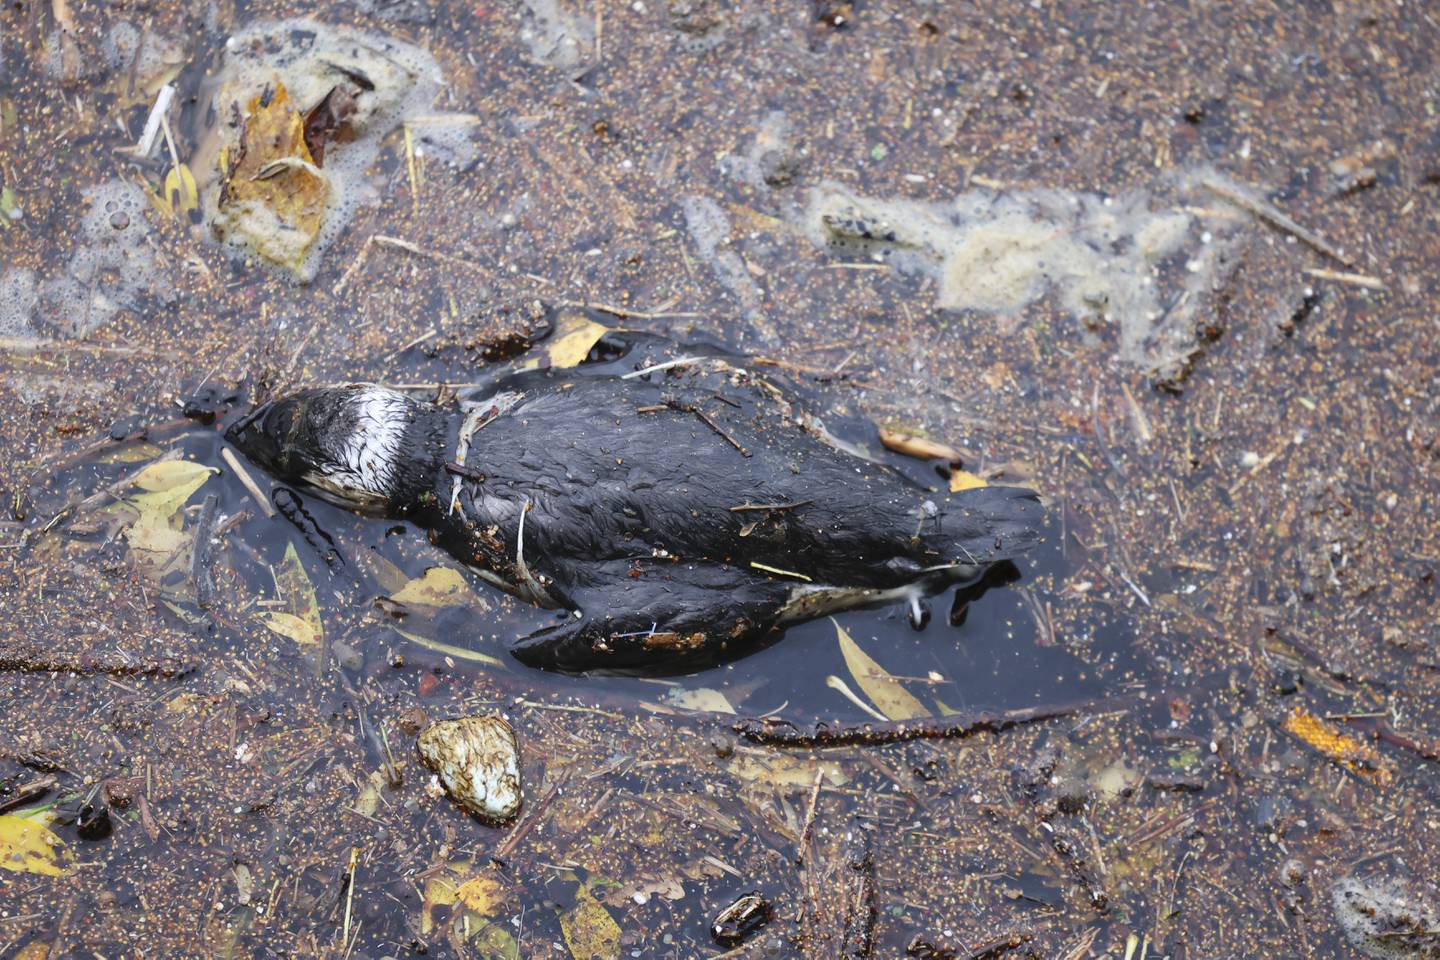 Massedød av fugler har vi også opplevd tidligere i Norge. I 2021 ble det funnet hundrevis av døde lomvier i Oslofjorden. Lomvi er en kritisk truet art.